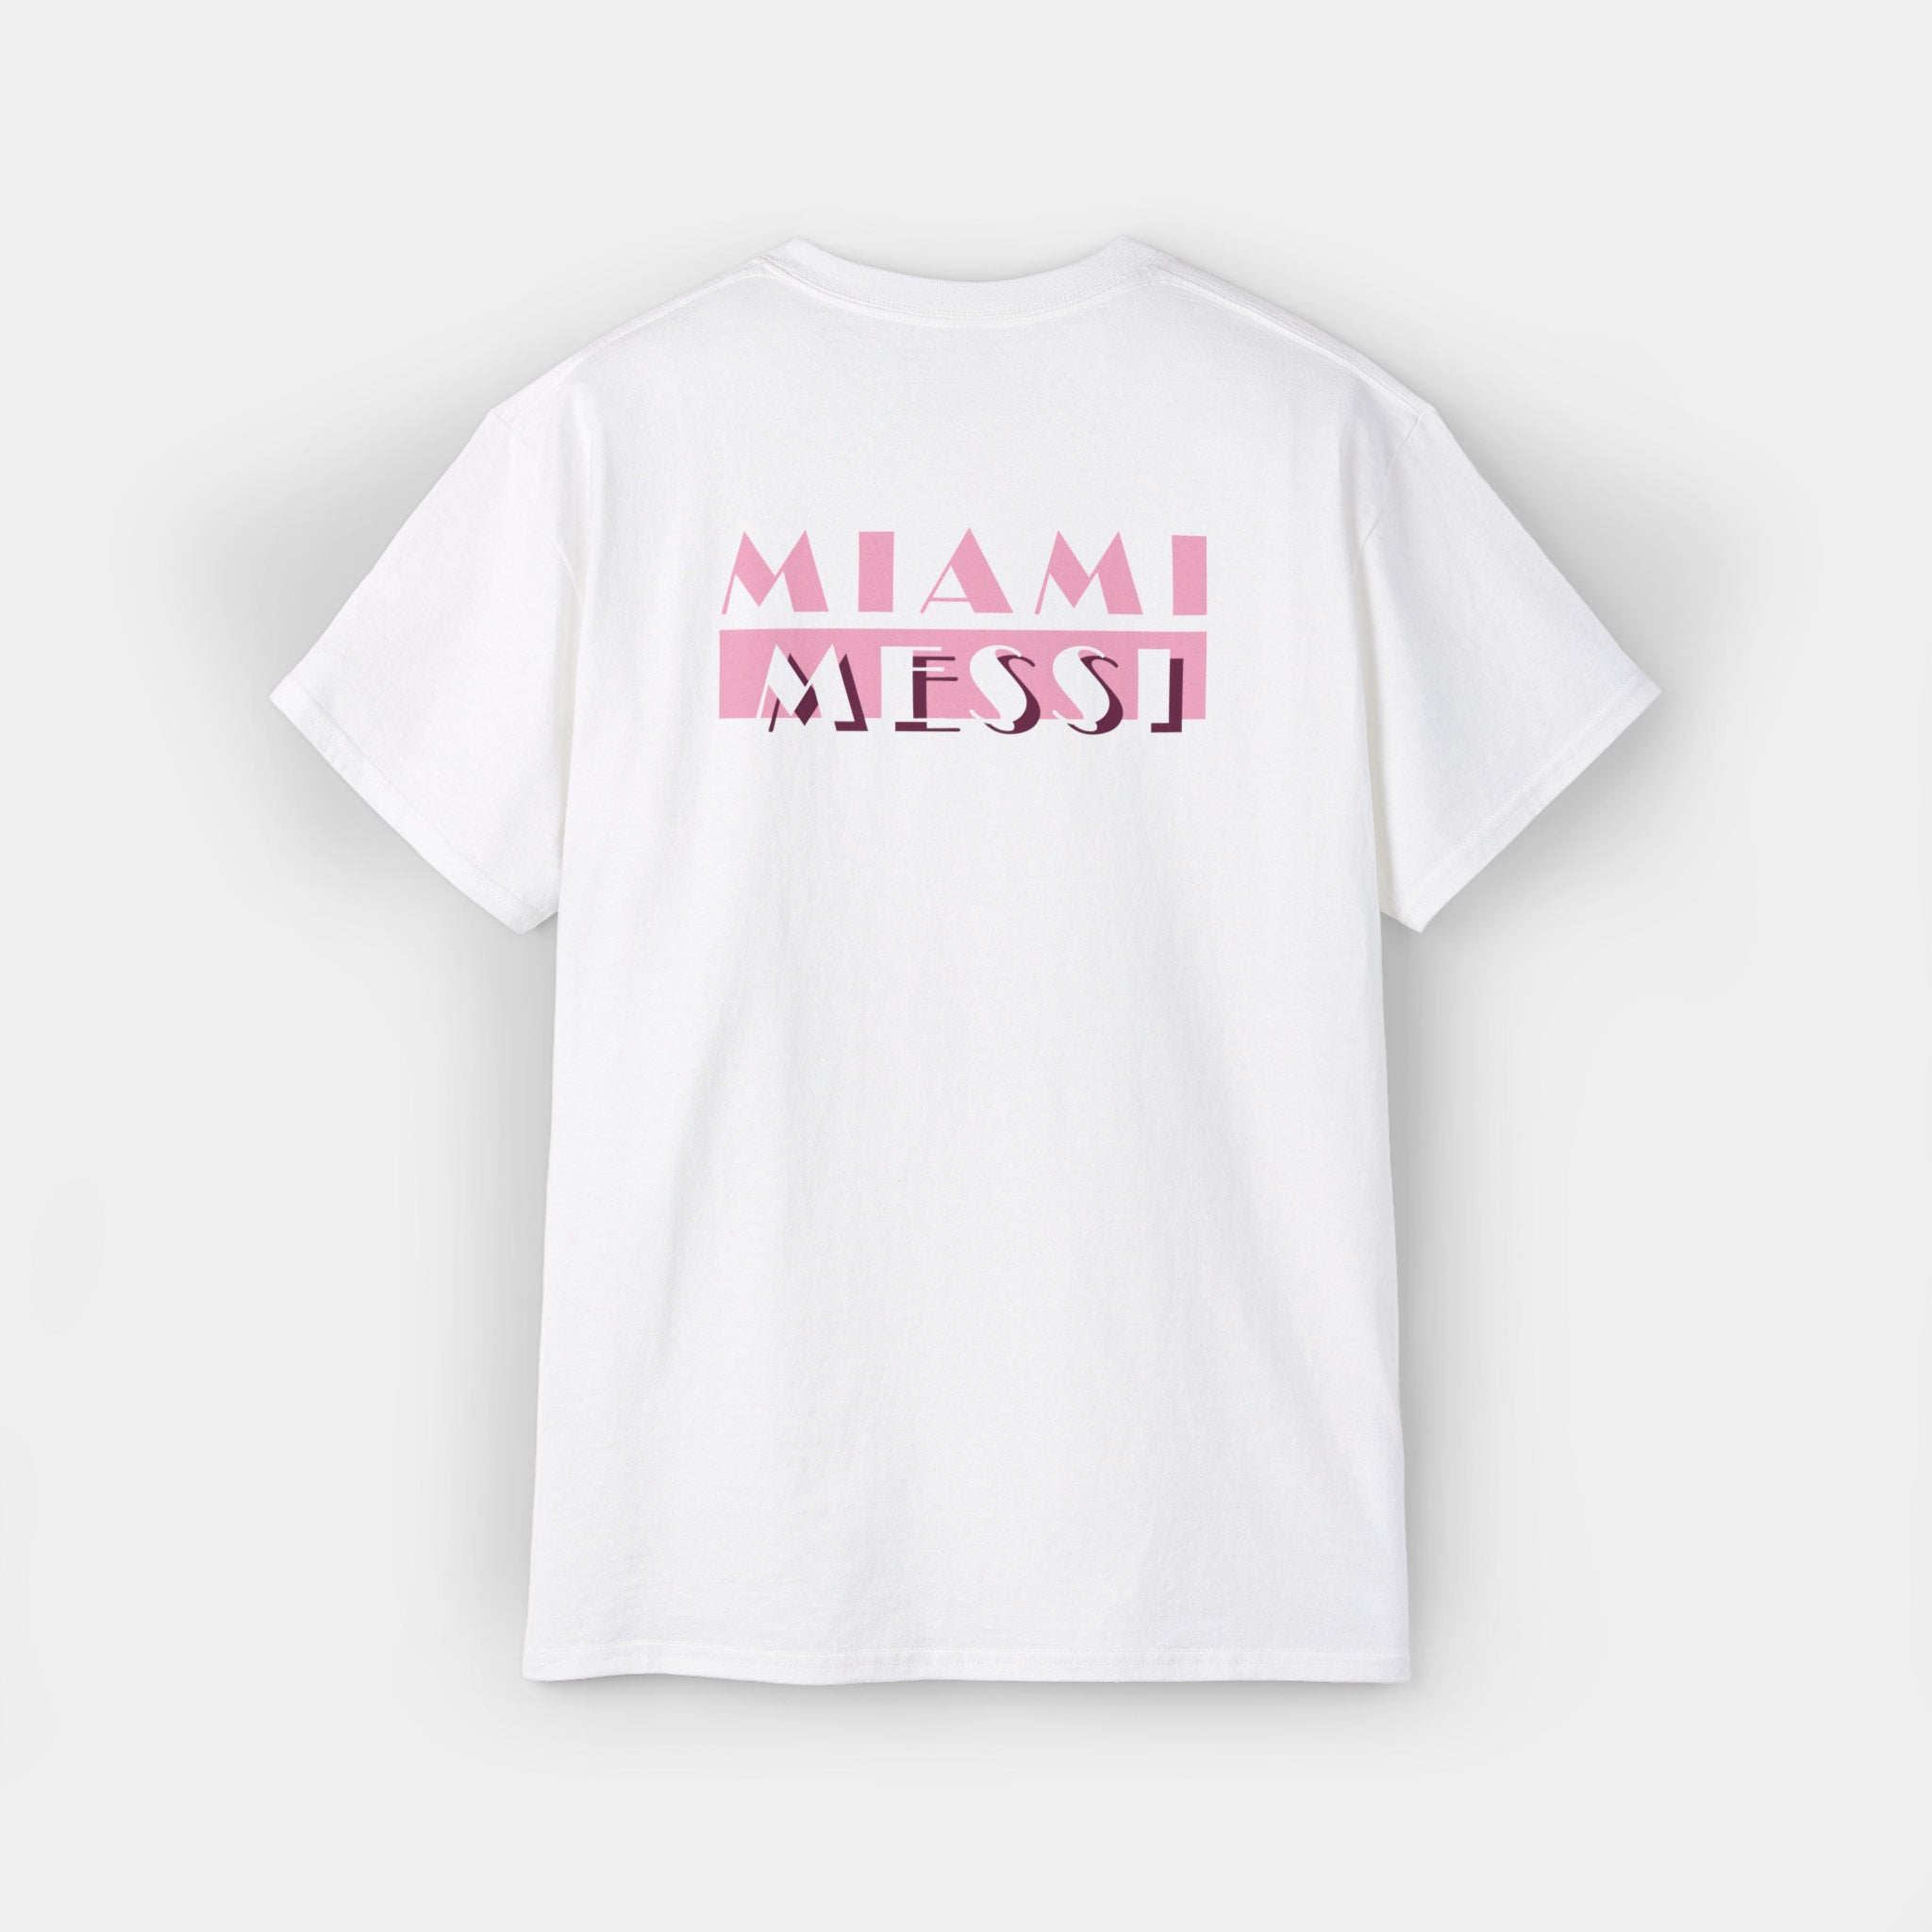 Miami Vice (Inter Miami) T-shirt